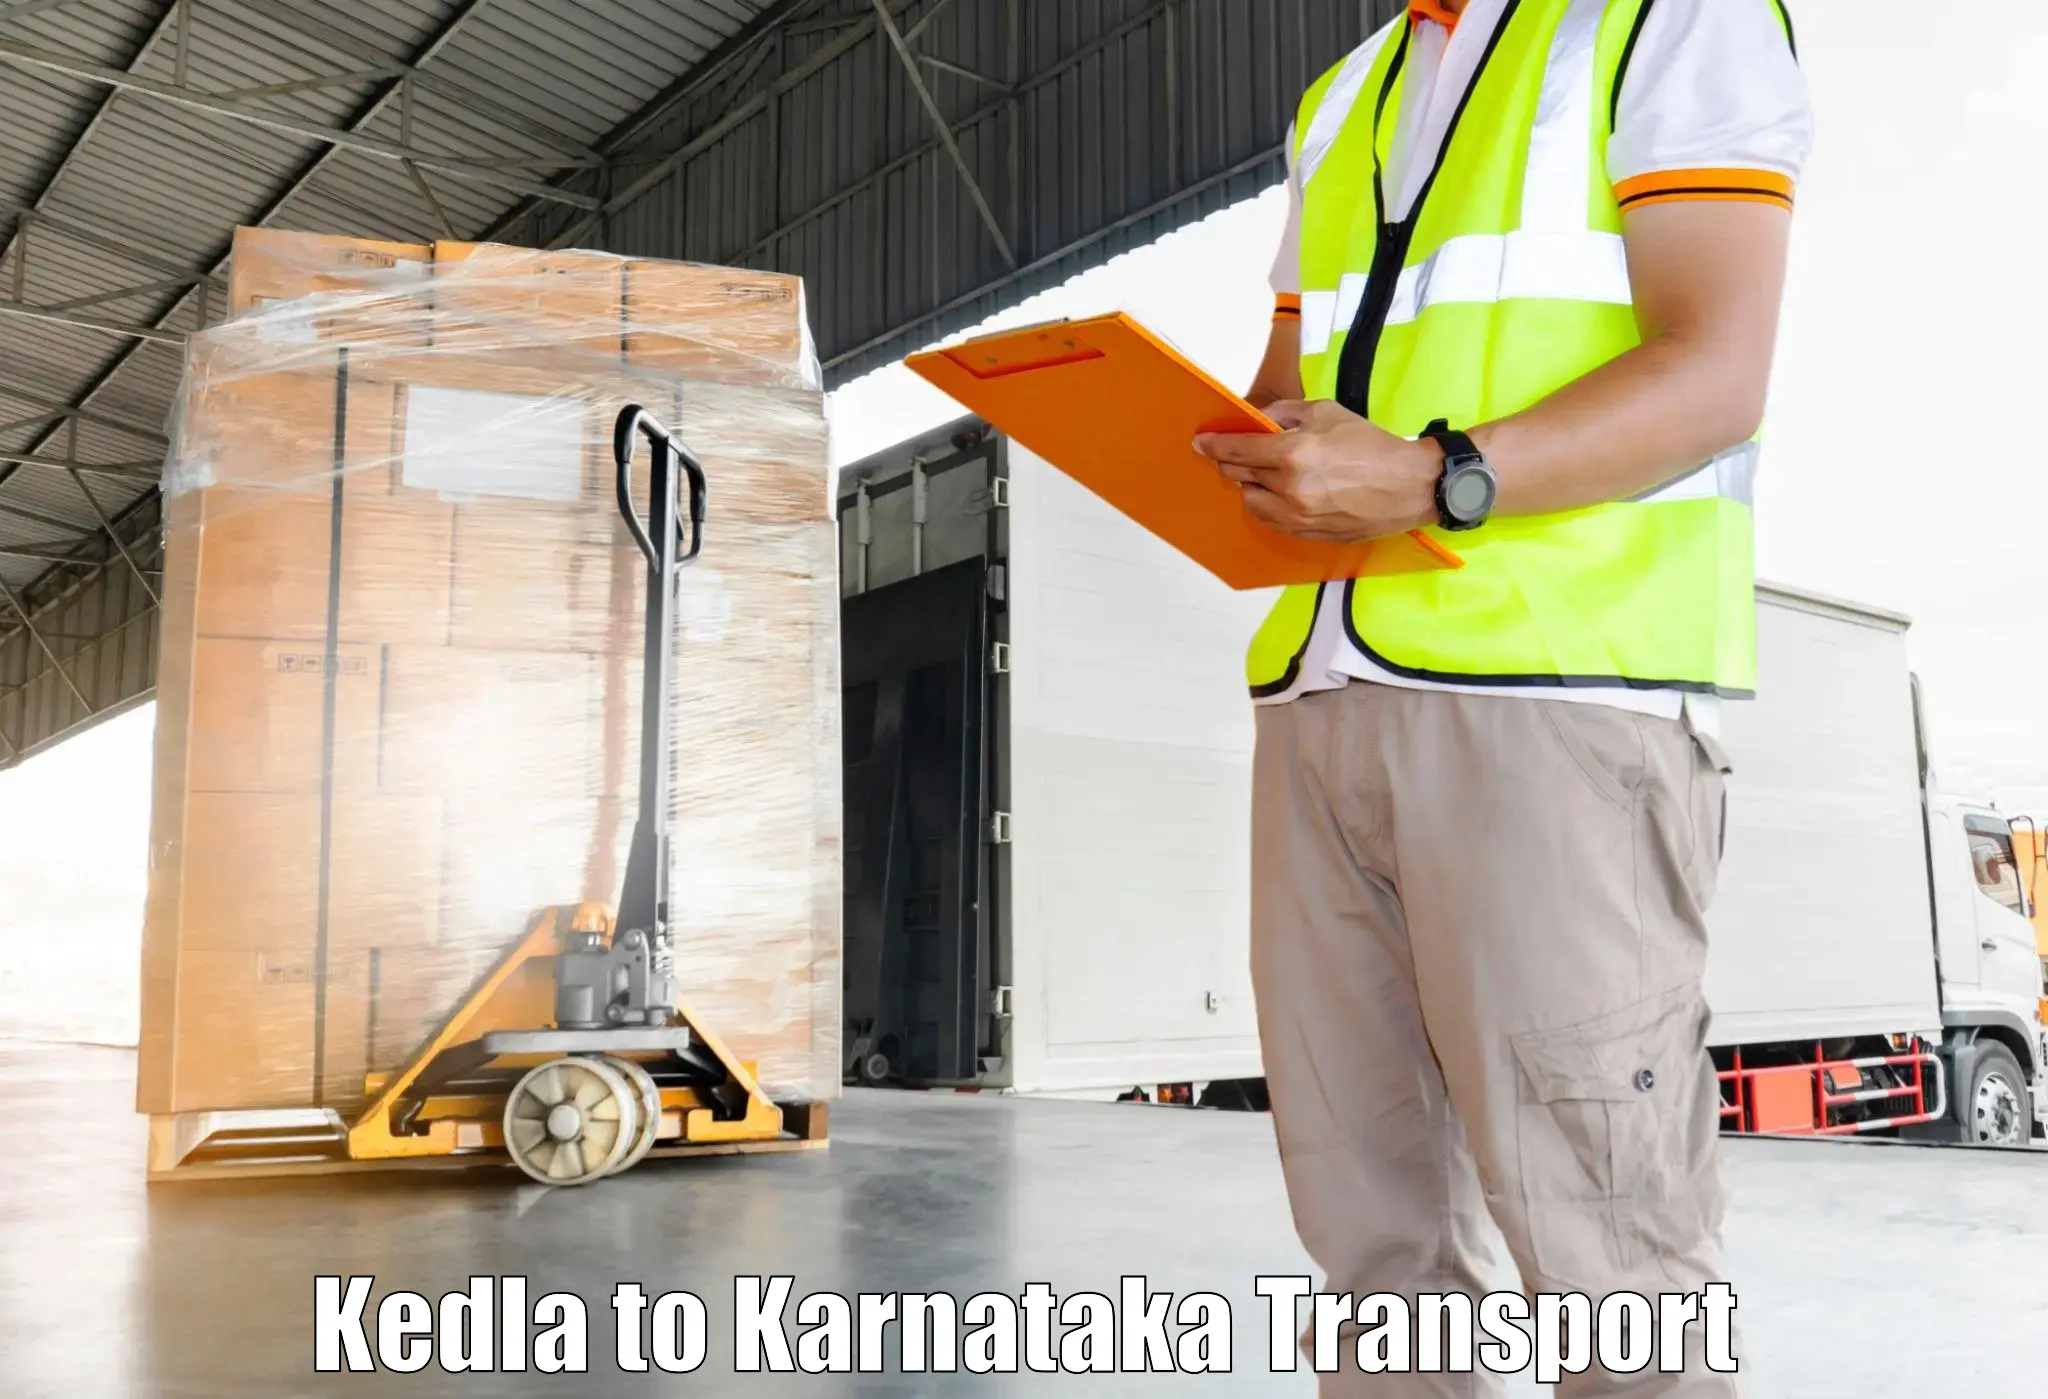 Vehicle parcel service Kedla to Jagalur